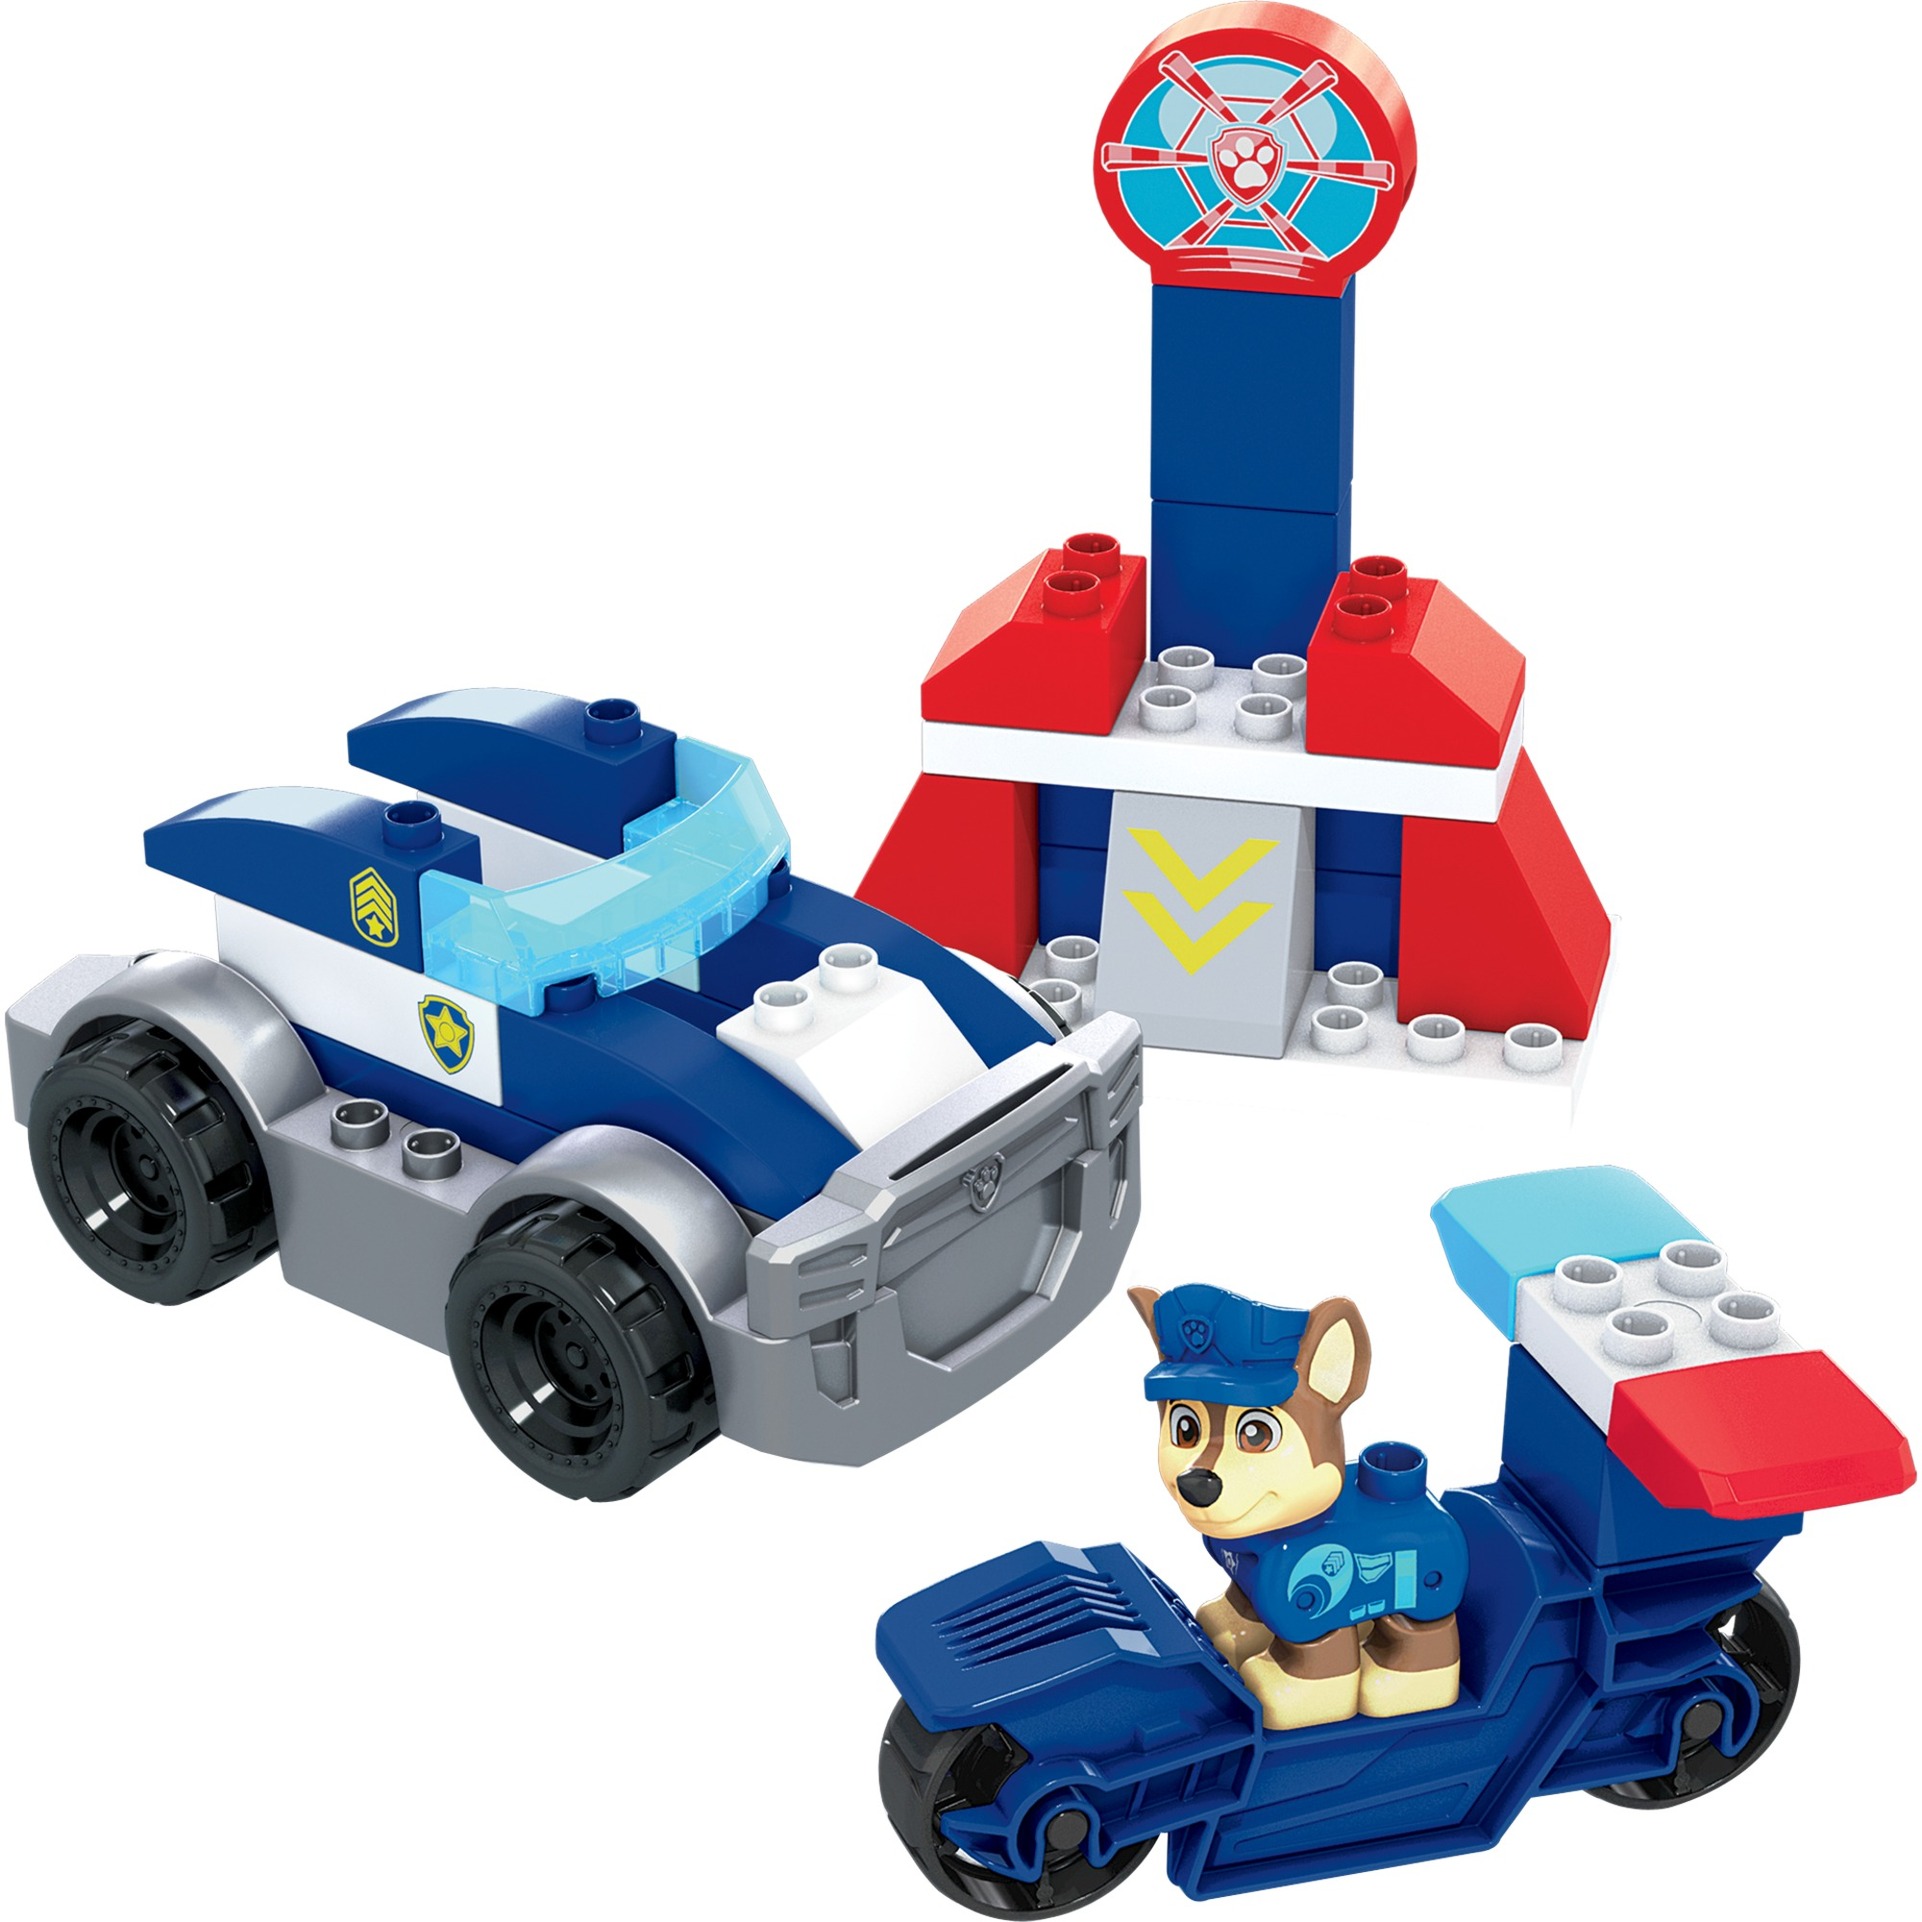 Image of Alternate - Mega Bloks Paw Patrol Chases Polizeifahrzeug, Konstruktionsspielzeug online einkaufen bei Alternate